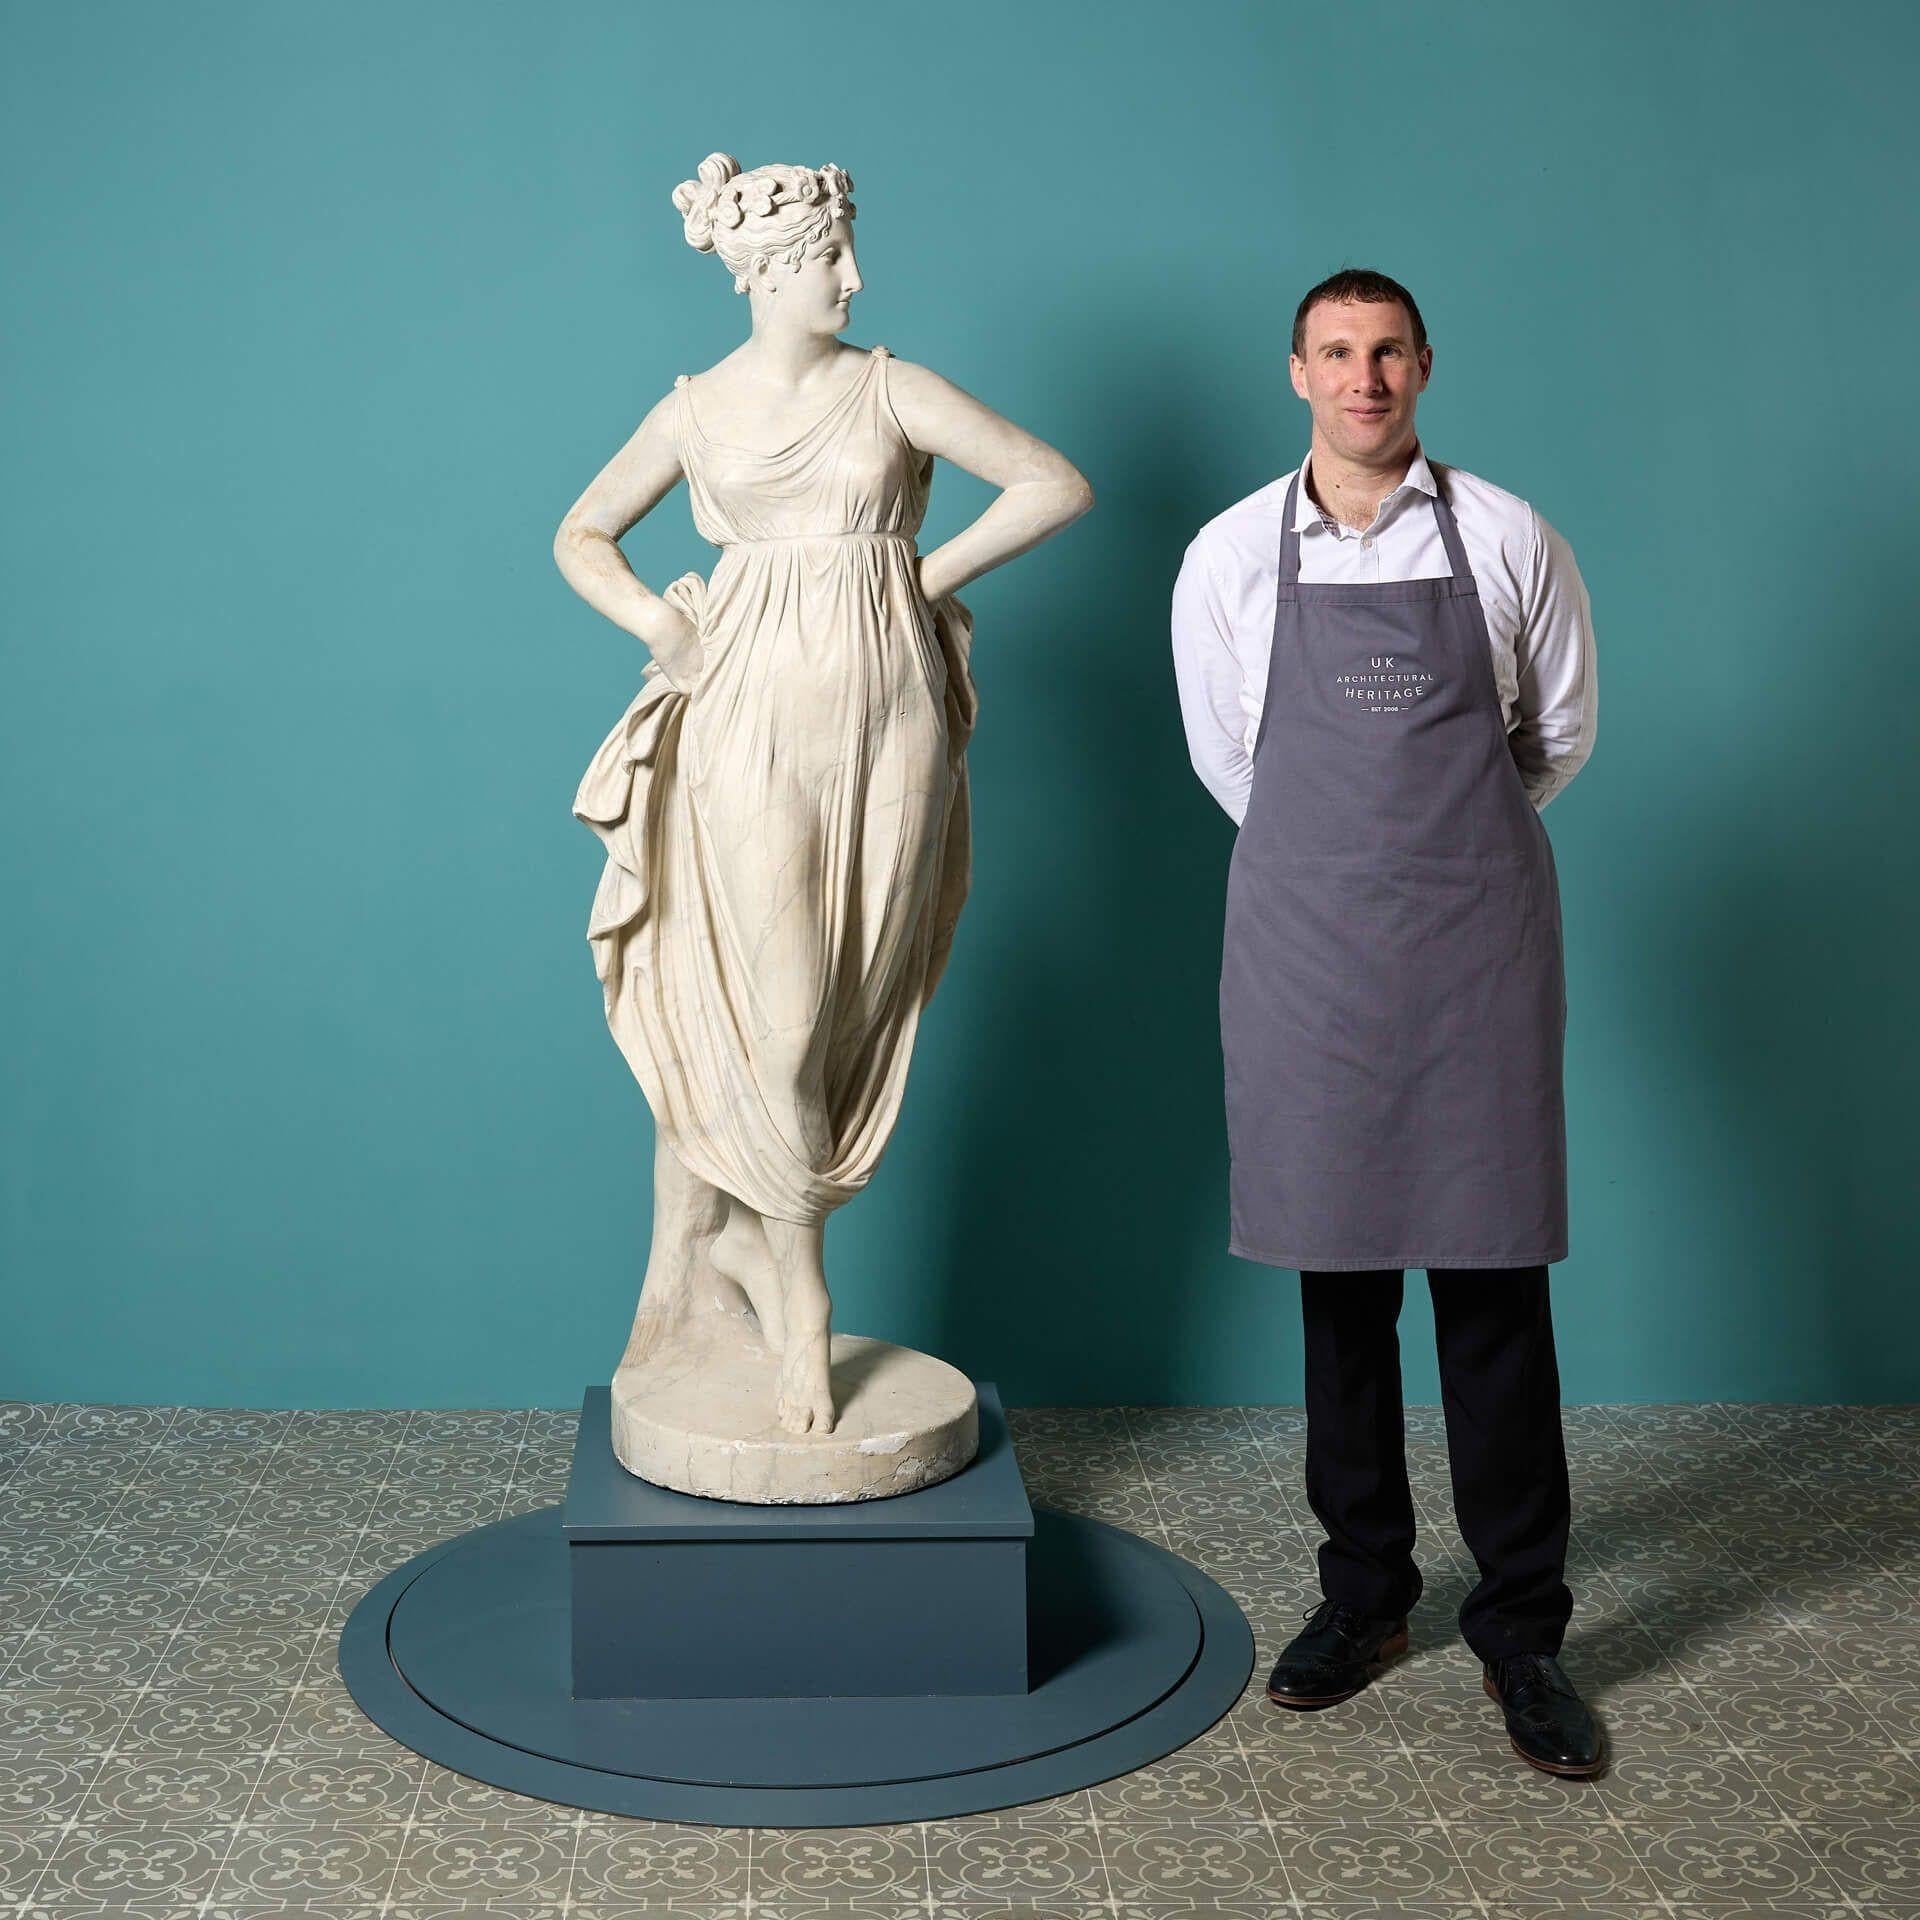 Eine antike marmorierte Gipsstatue der Hebe, der Göttin der Jugend, nach Antonio Canova. Das Äußere dieser lebensgroßen Skulptur ist aus Gips gefertigt und simuliert Marmor, was sie zu einer sehr eindrucksvollen Statue macht. Er eignet sich perfekt